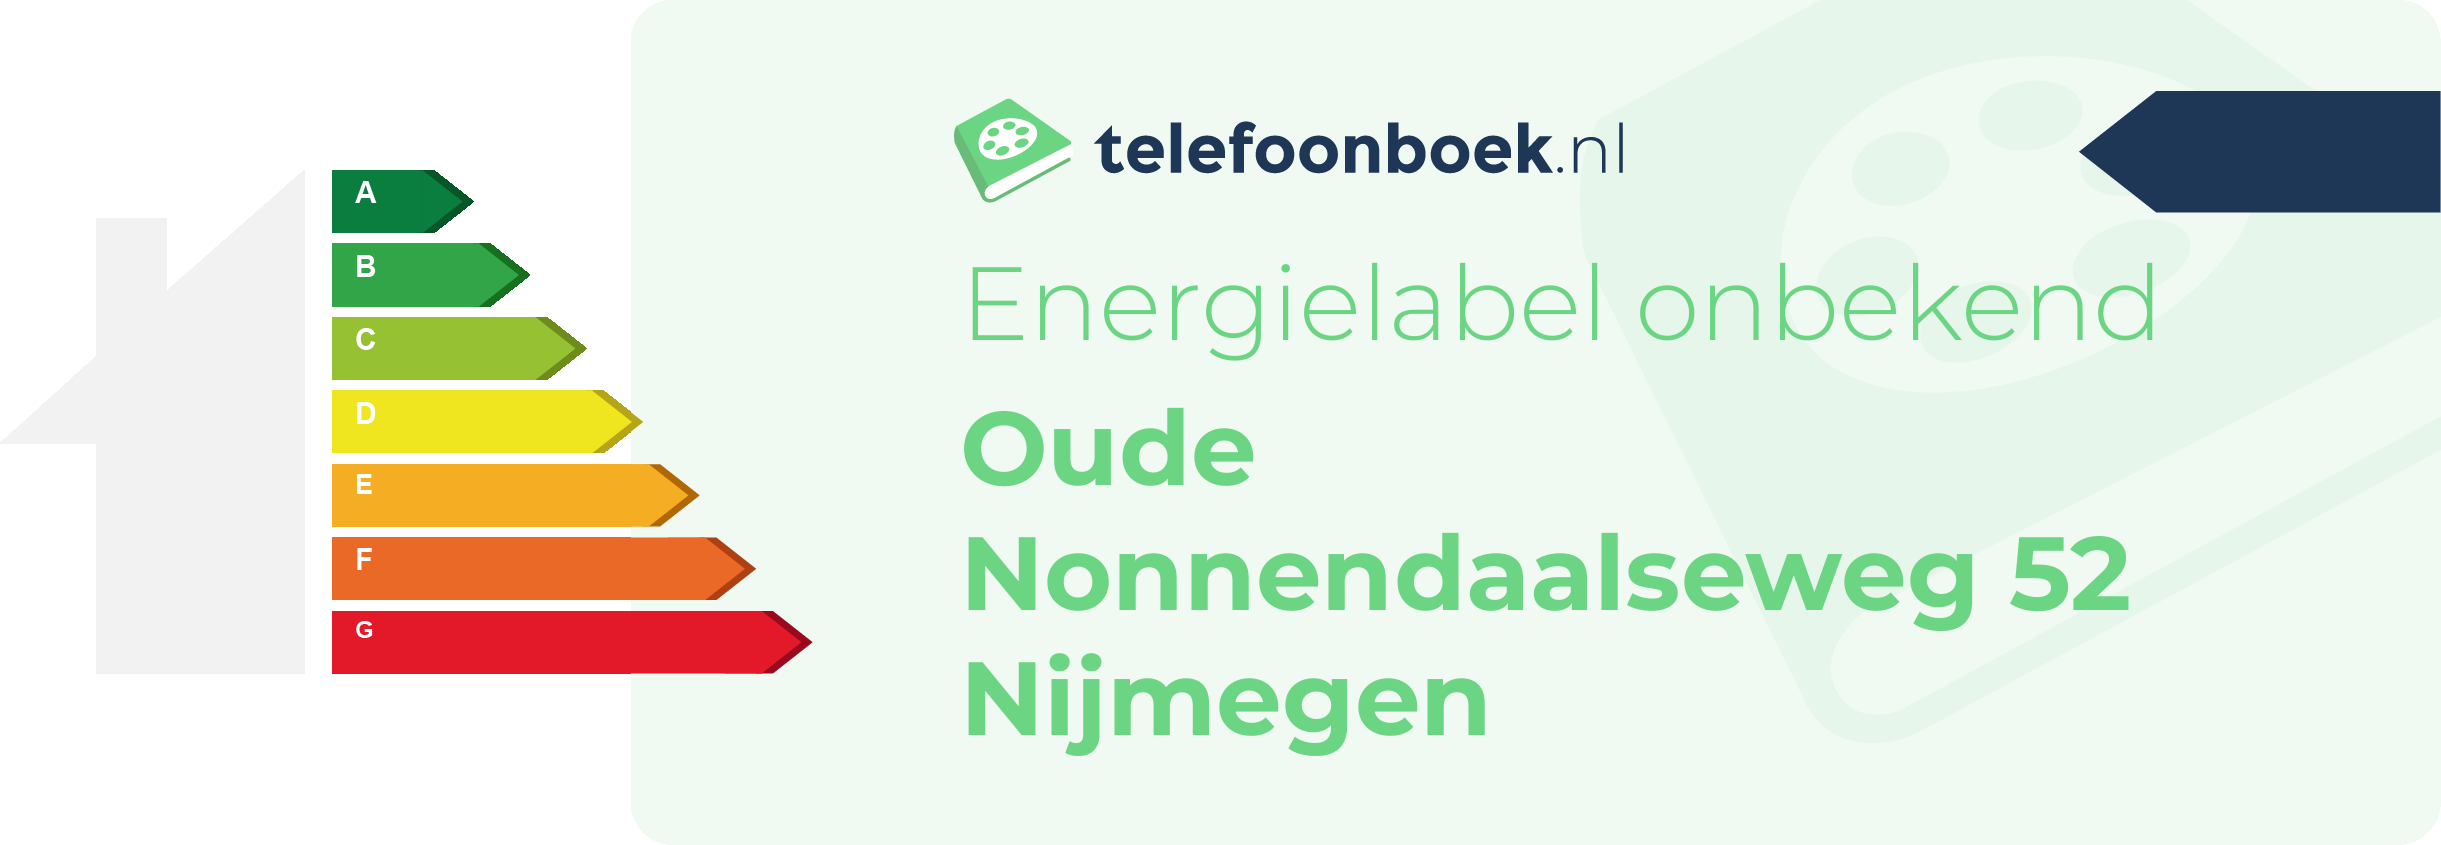 Energielabel Oude Nonnendaalseweg 52 Nijmegen